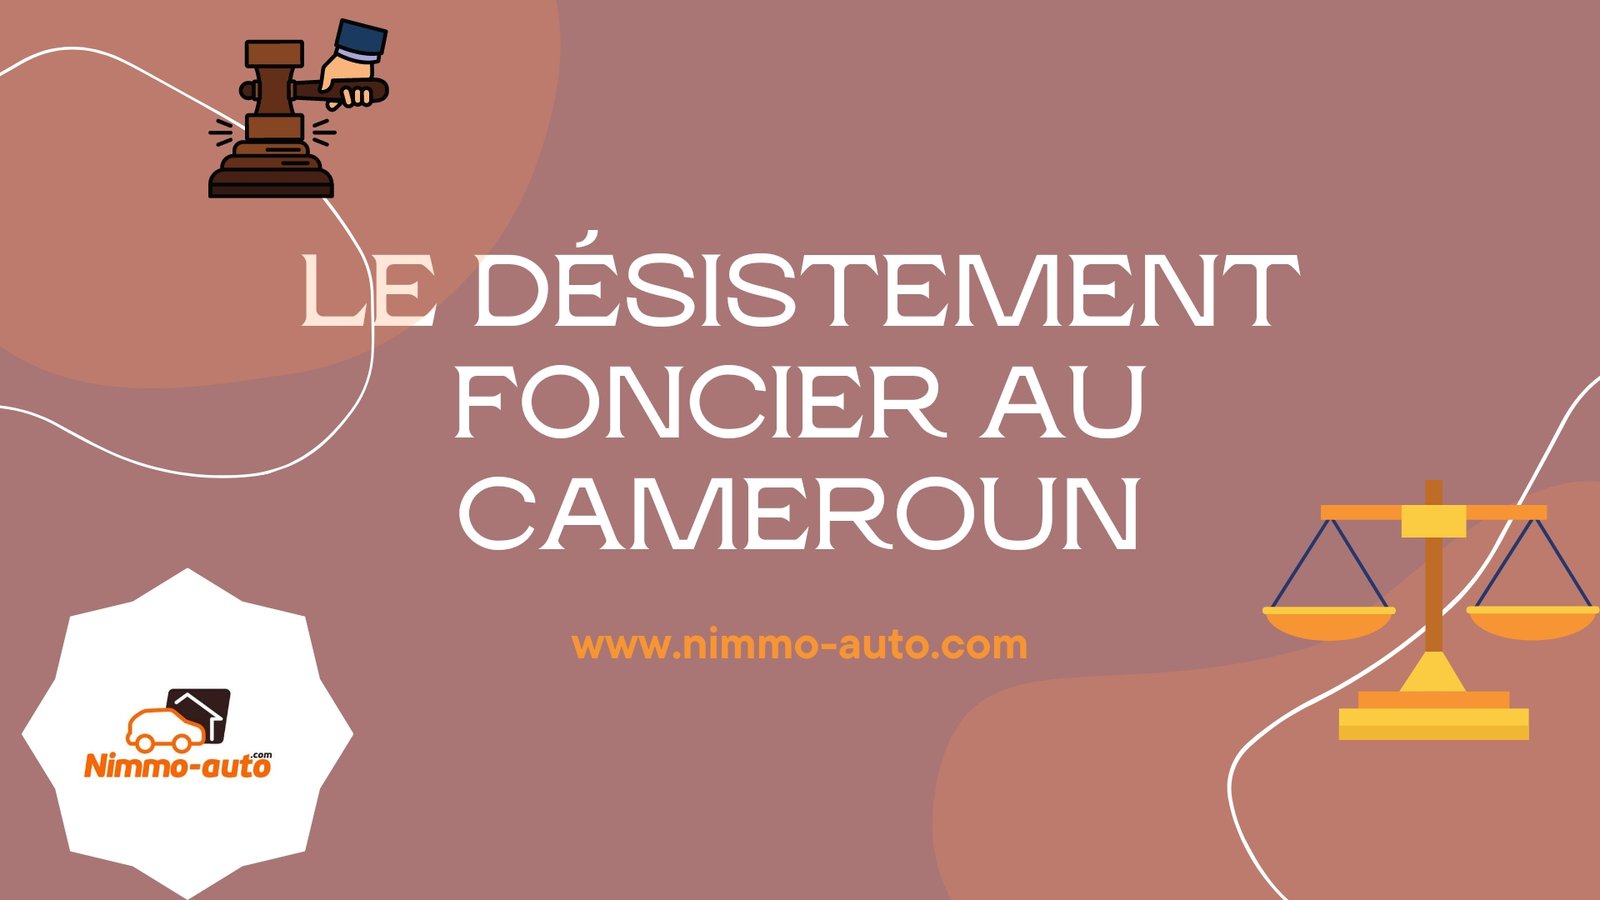 LE DESISTEMENT FONCIER AU CAMEROUN